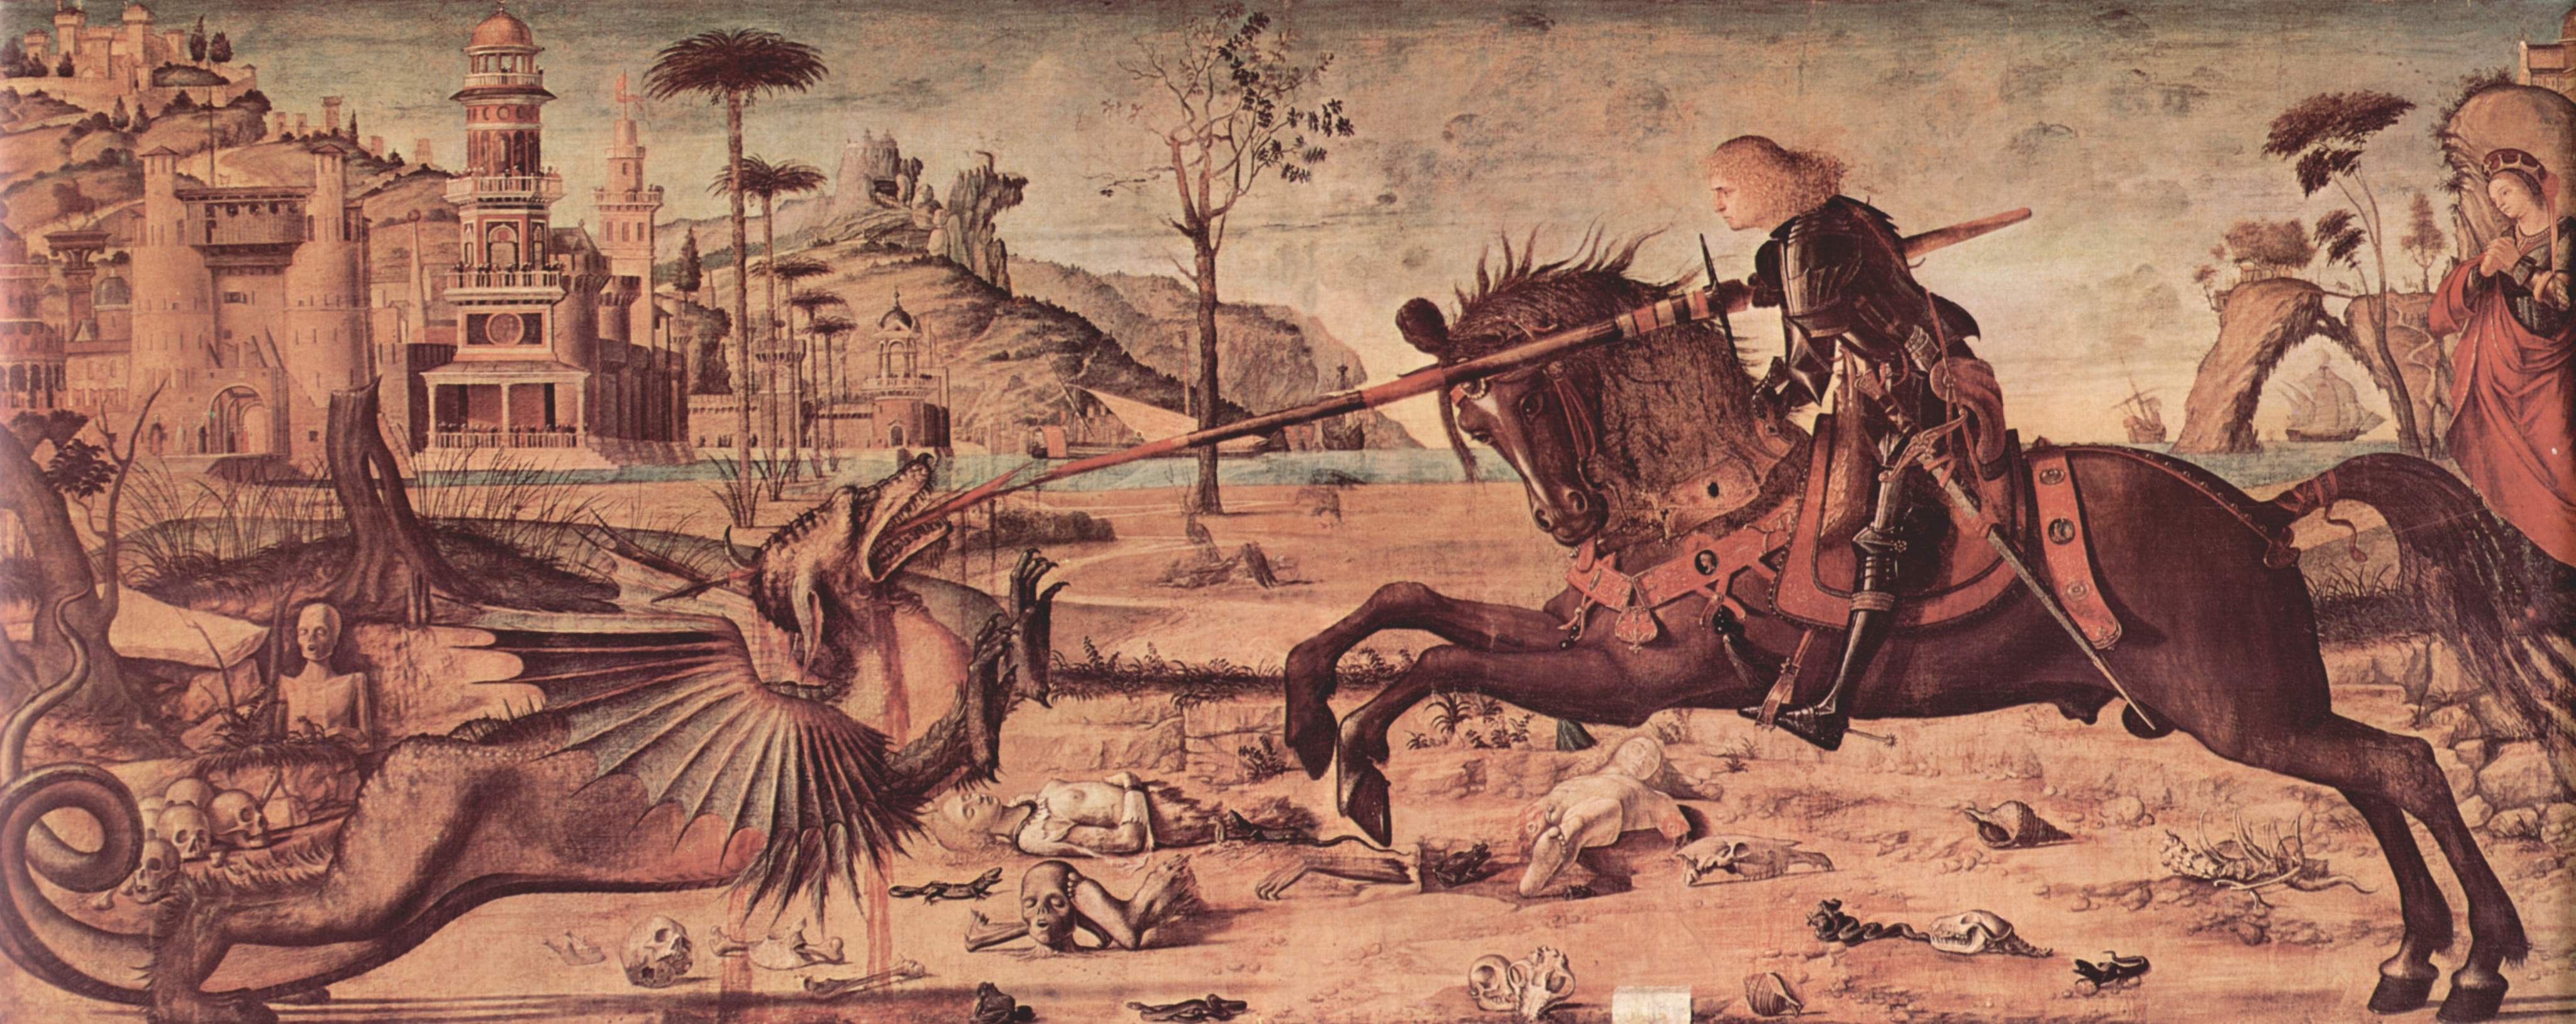 St George and the Dragon by Vittore Carpaccio - 1502 - 141 x 360 cm Scuola di San Giorgio degli Schiavoni